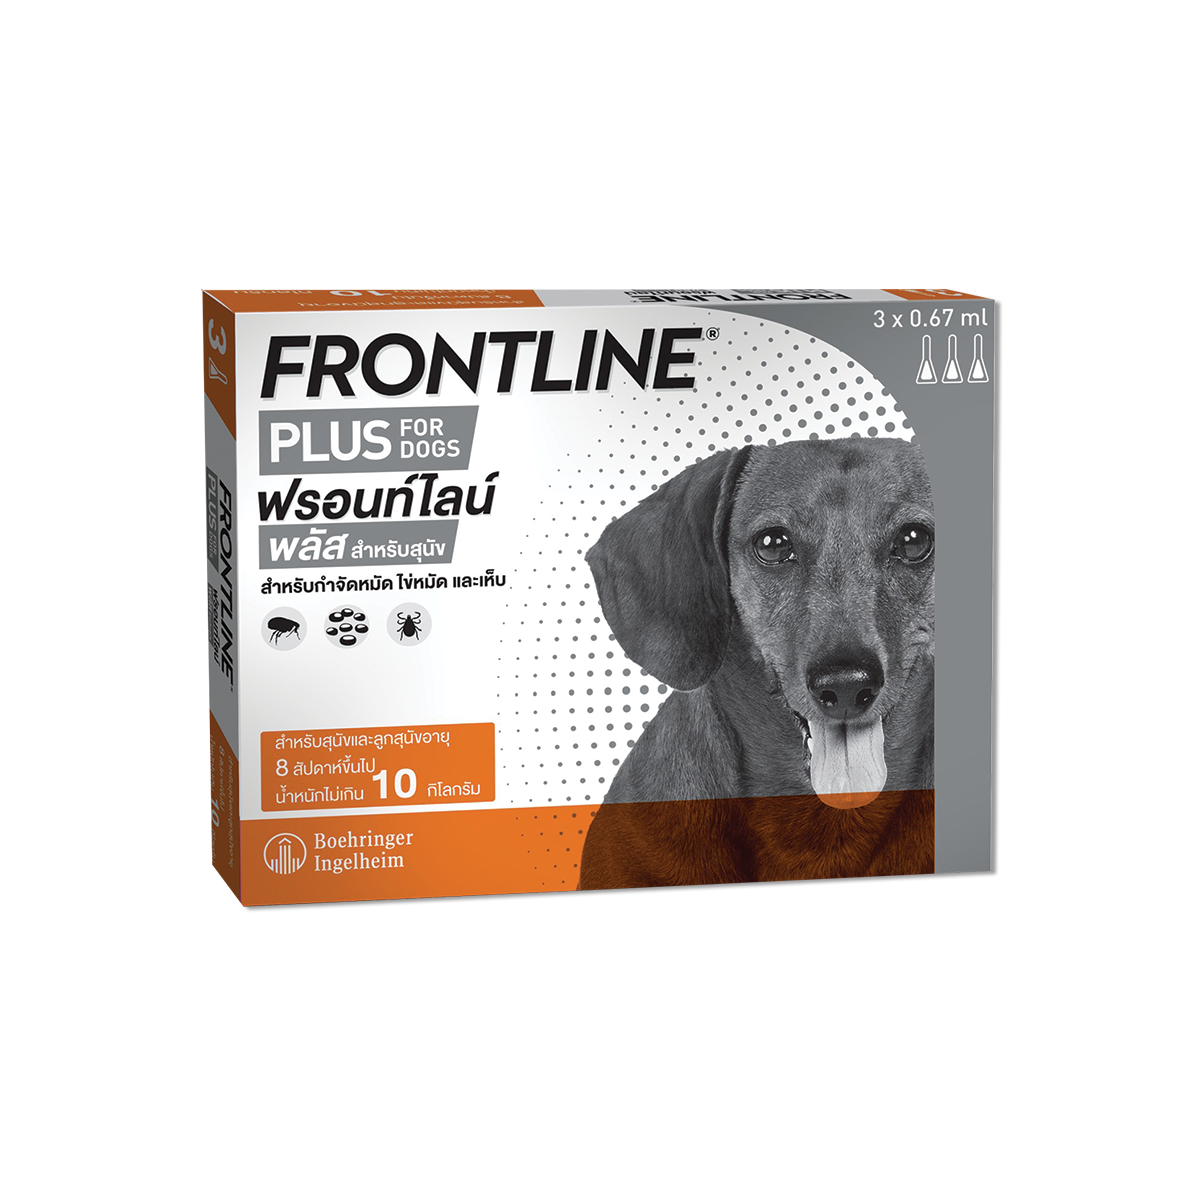 Frontline Plus Dog Size S ฟรอนท์ไลน์ พลัส ยาหยดกำจัดเห็บหมัดสำหรับสุนัข (น้ำหนักไม่เกิน 10 กก.)